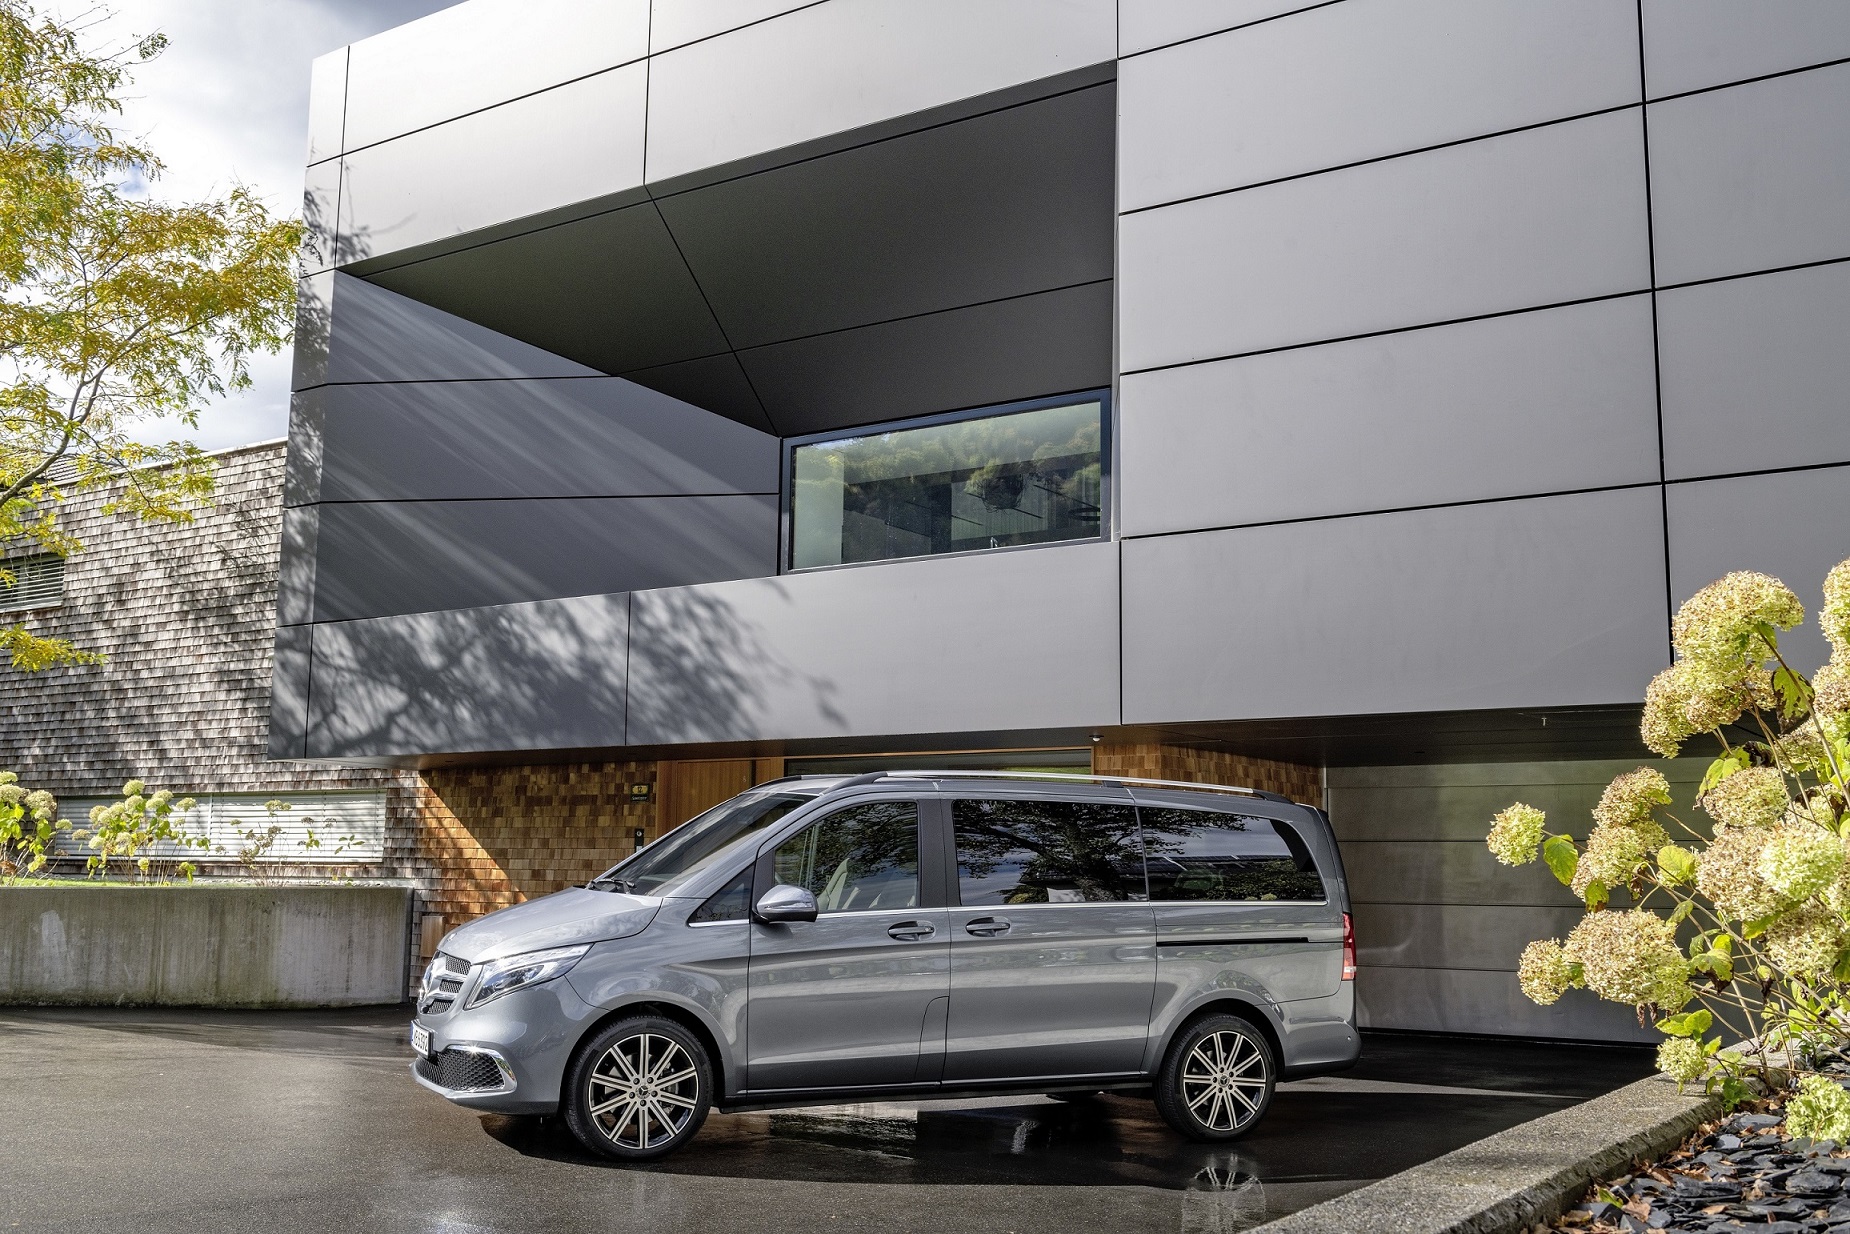 Mercedes-Benz, Mobil Dünya Kongresi 2019'da En Yeni Teknolojilerini Sergiledi 